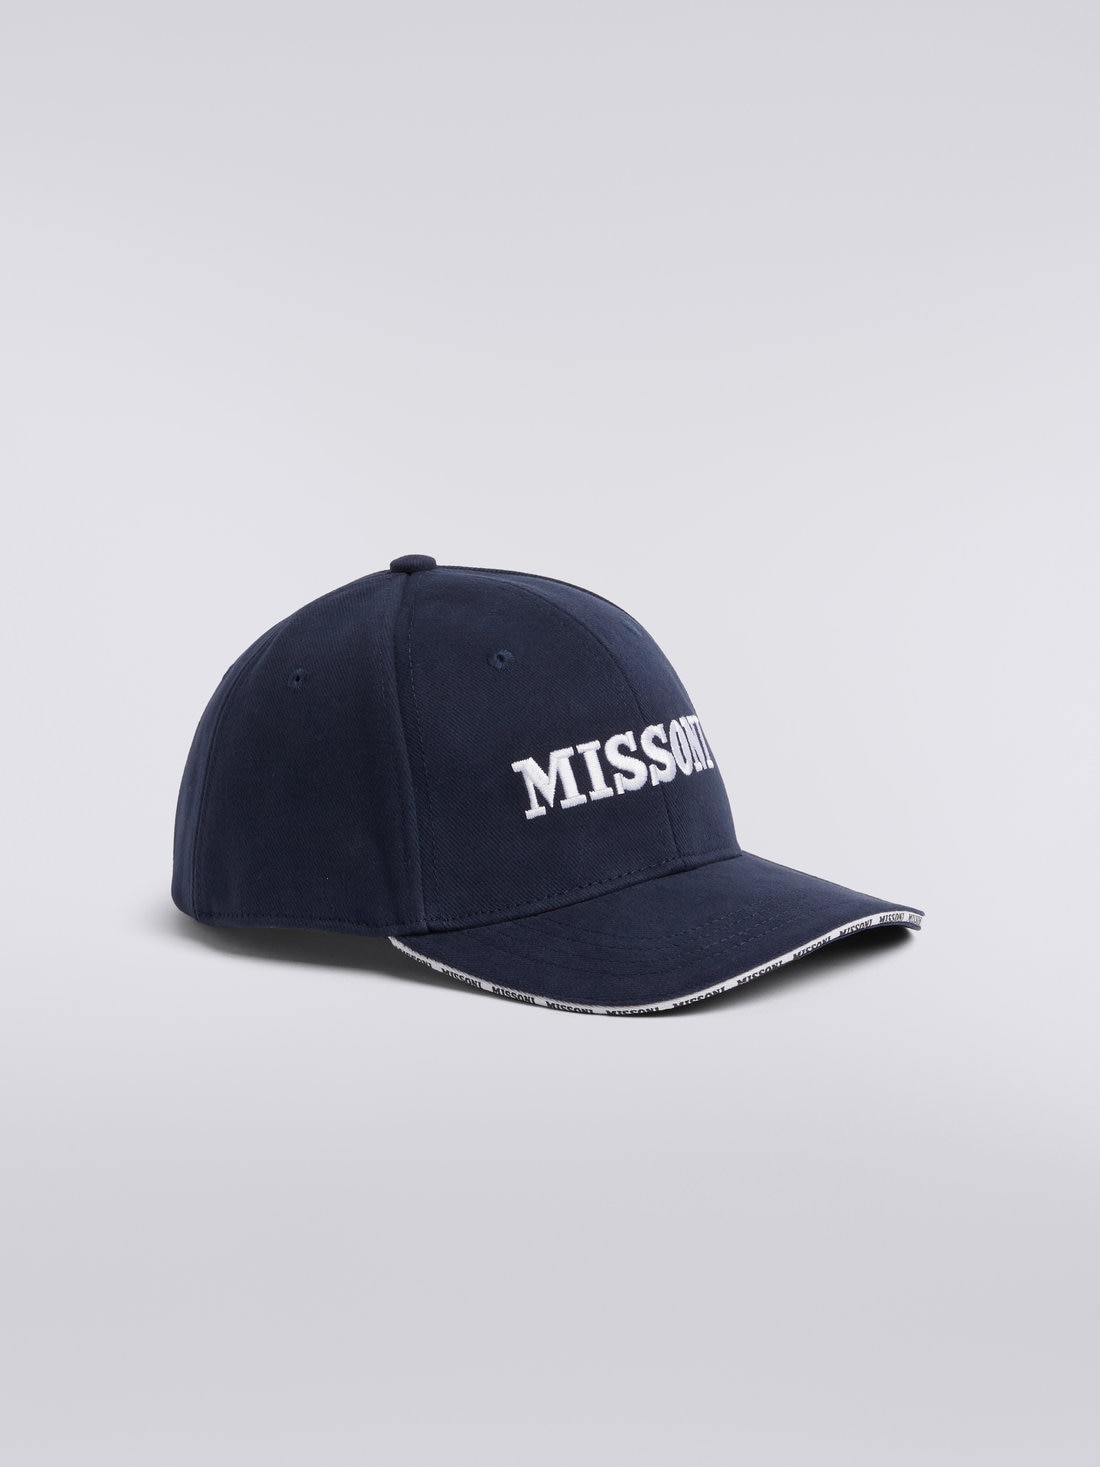 Cappello da baseball in cotone con logo, Multicolore  - 8053147023175 - 1